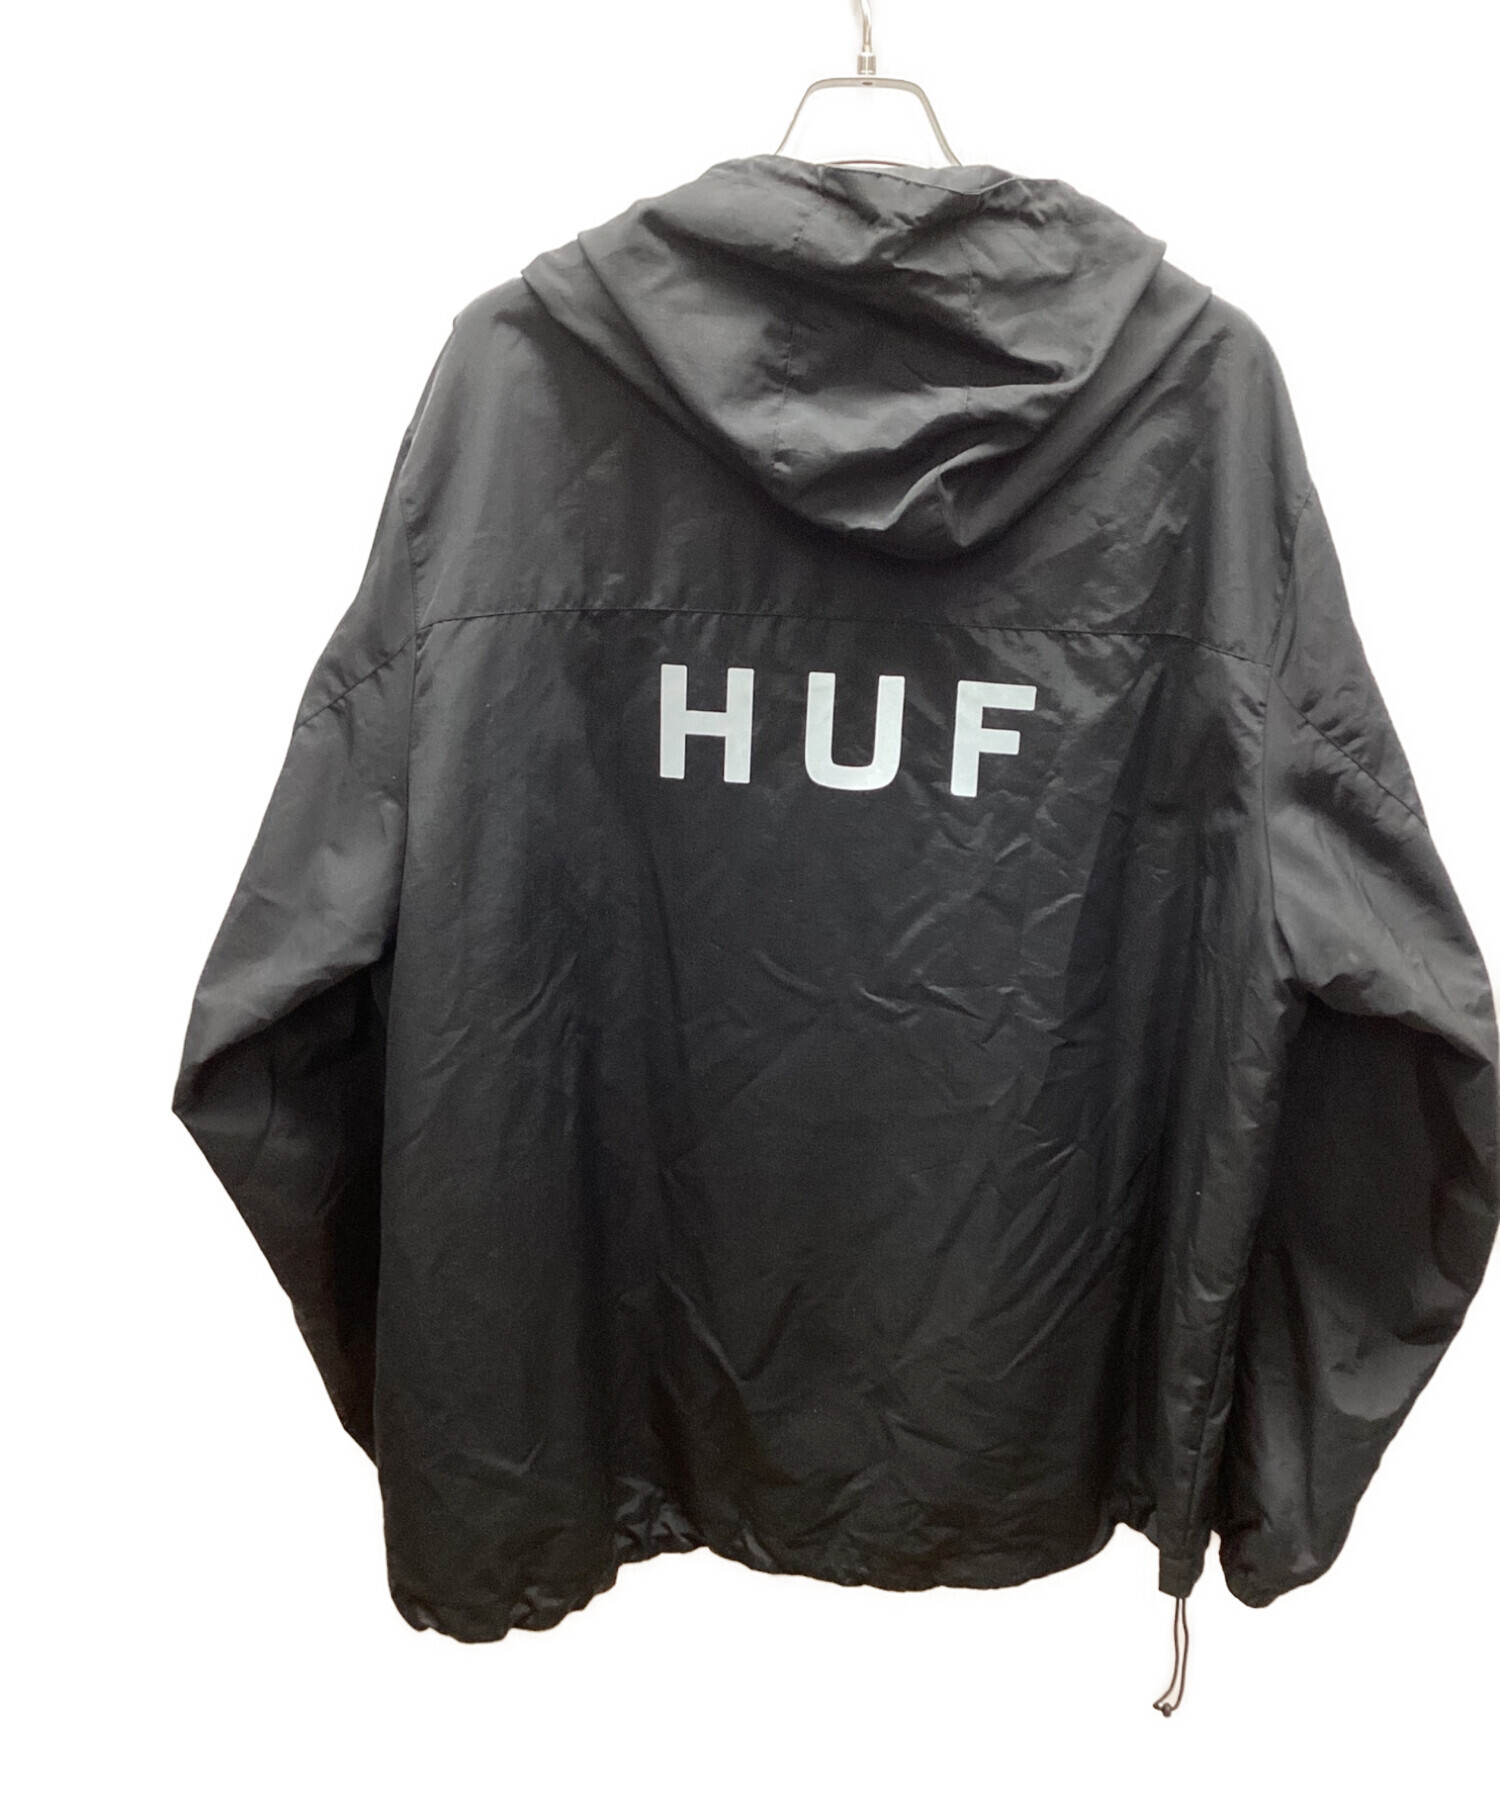 HUF (ハフ) マウンテンパーカー ブラック サイズ:XXL